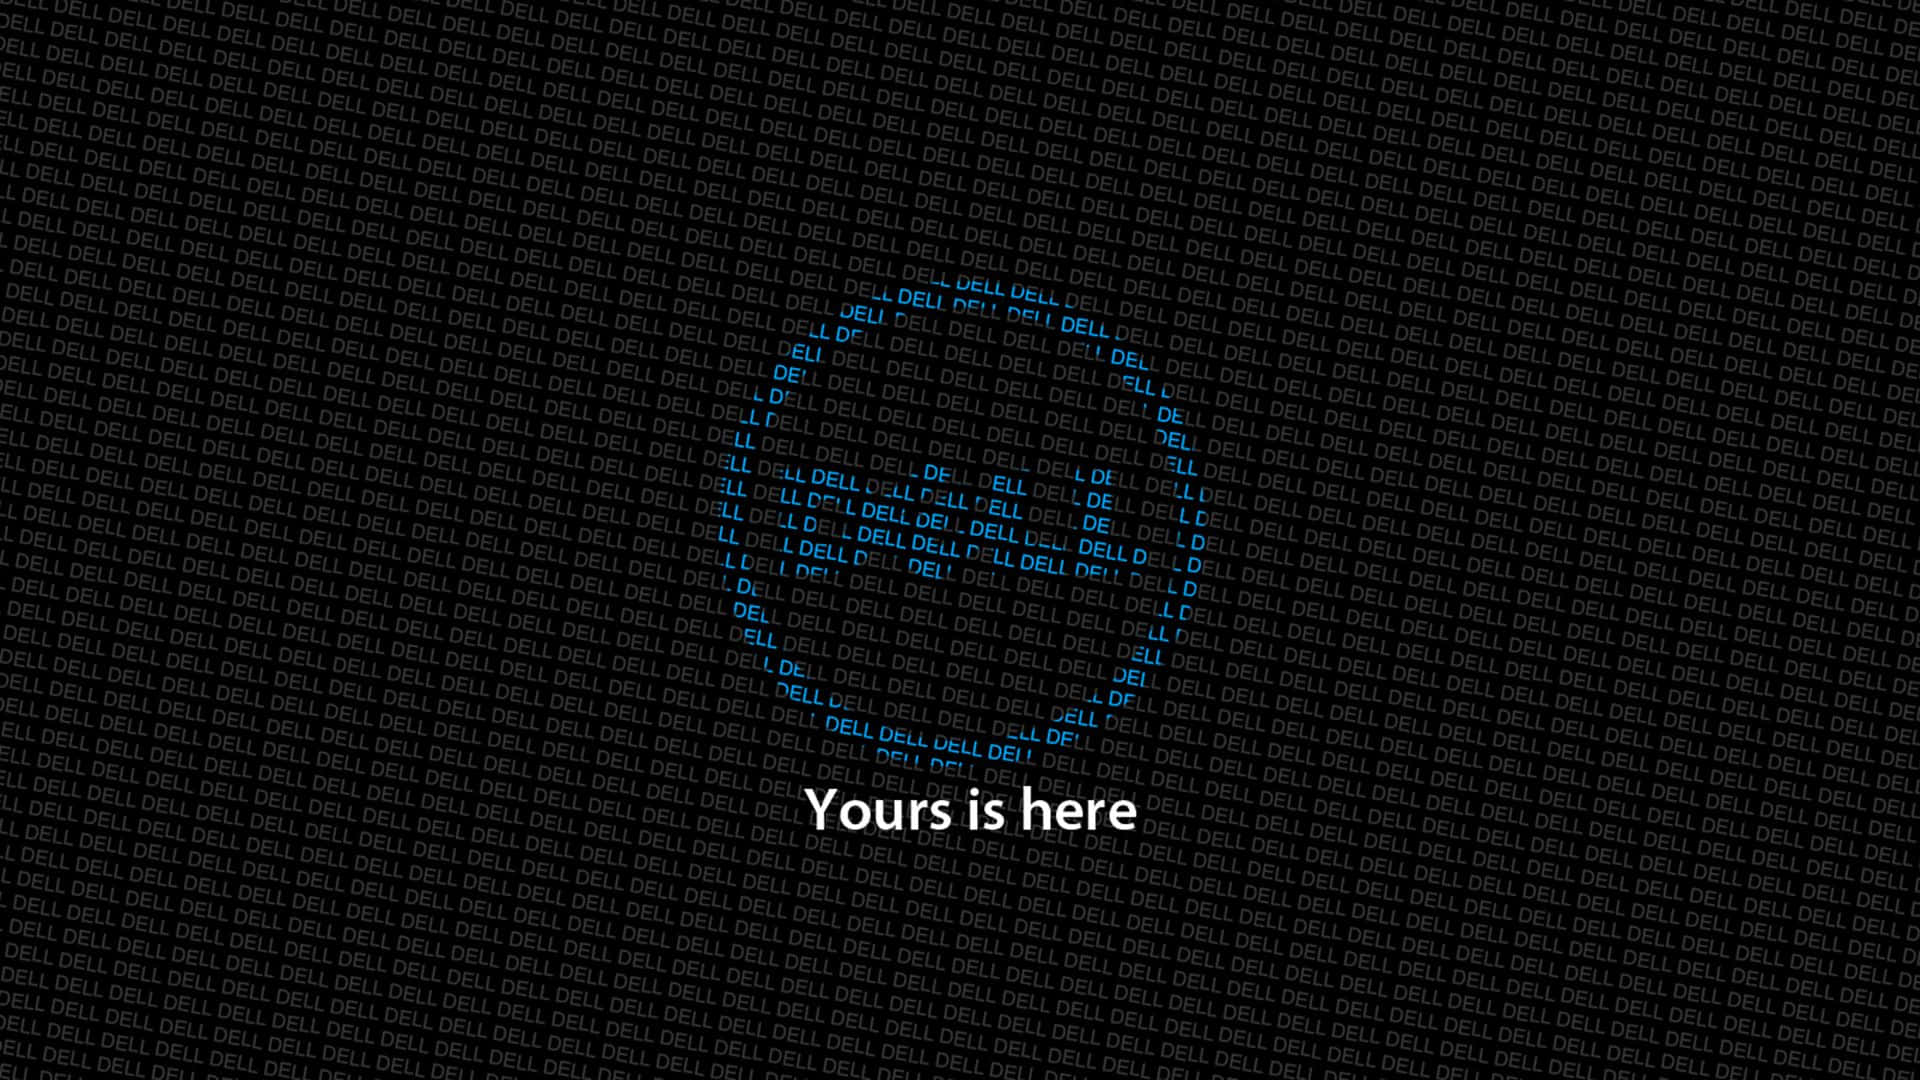 Forøgdin Computeroplevelse Med Dell.